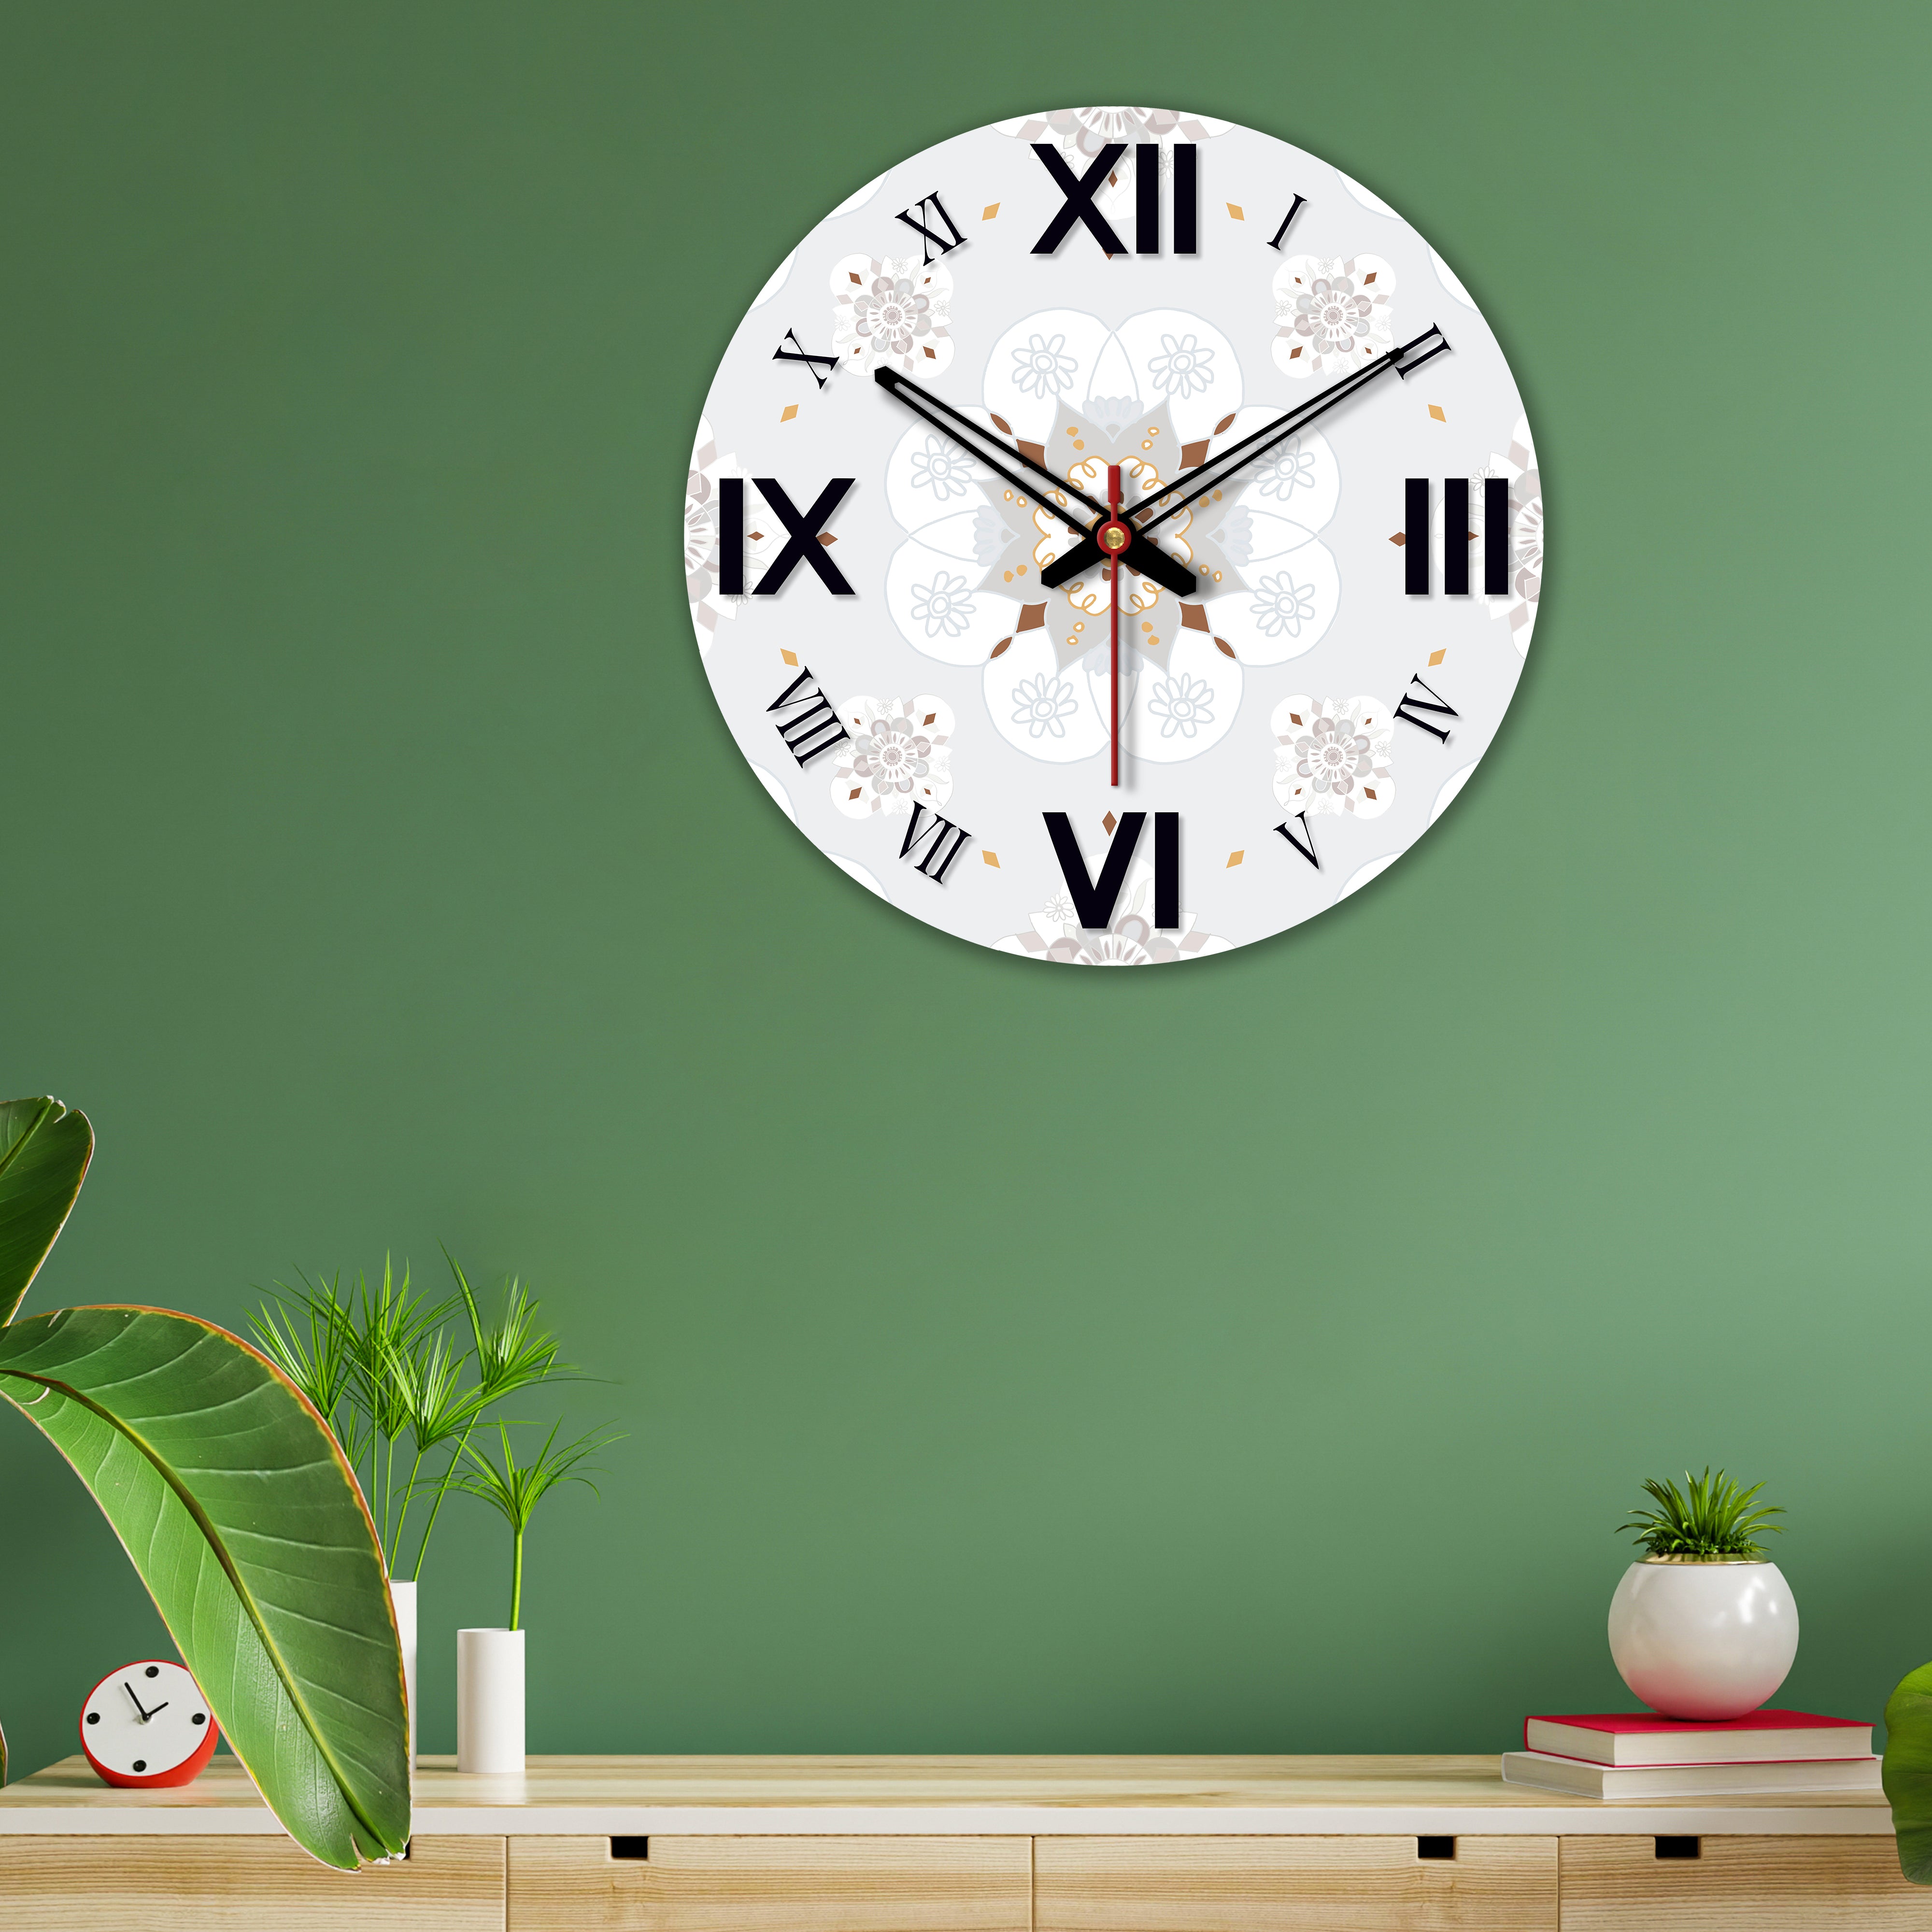 Wooden Wall Clock Design